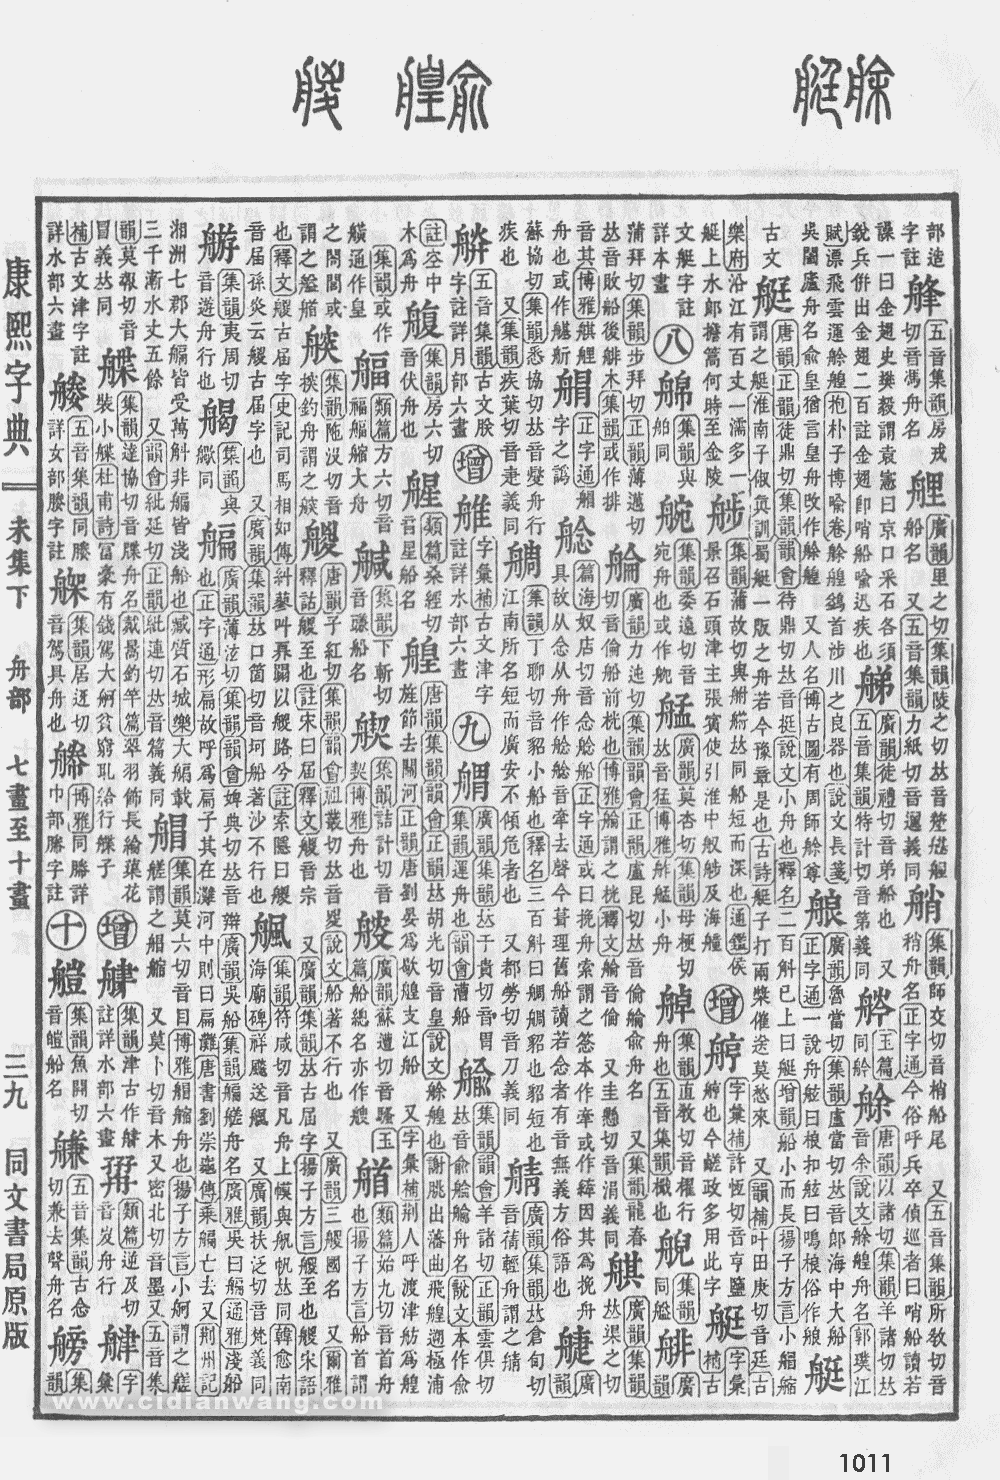 康熙字典掃描版第1011頁